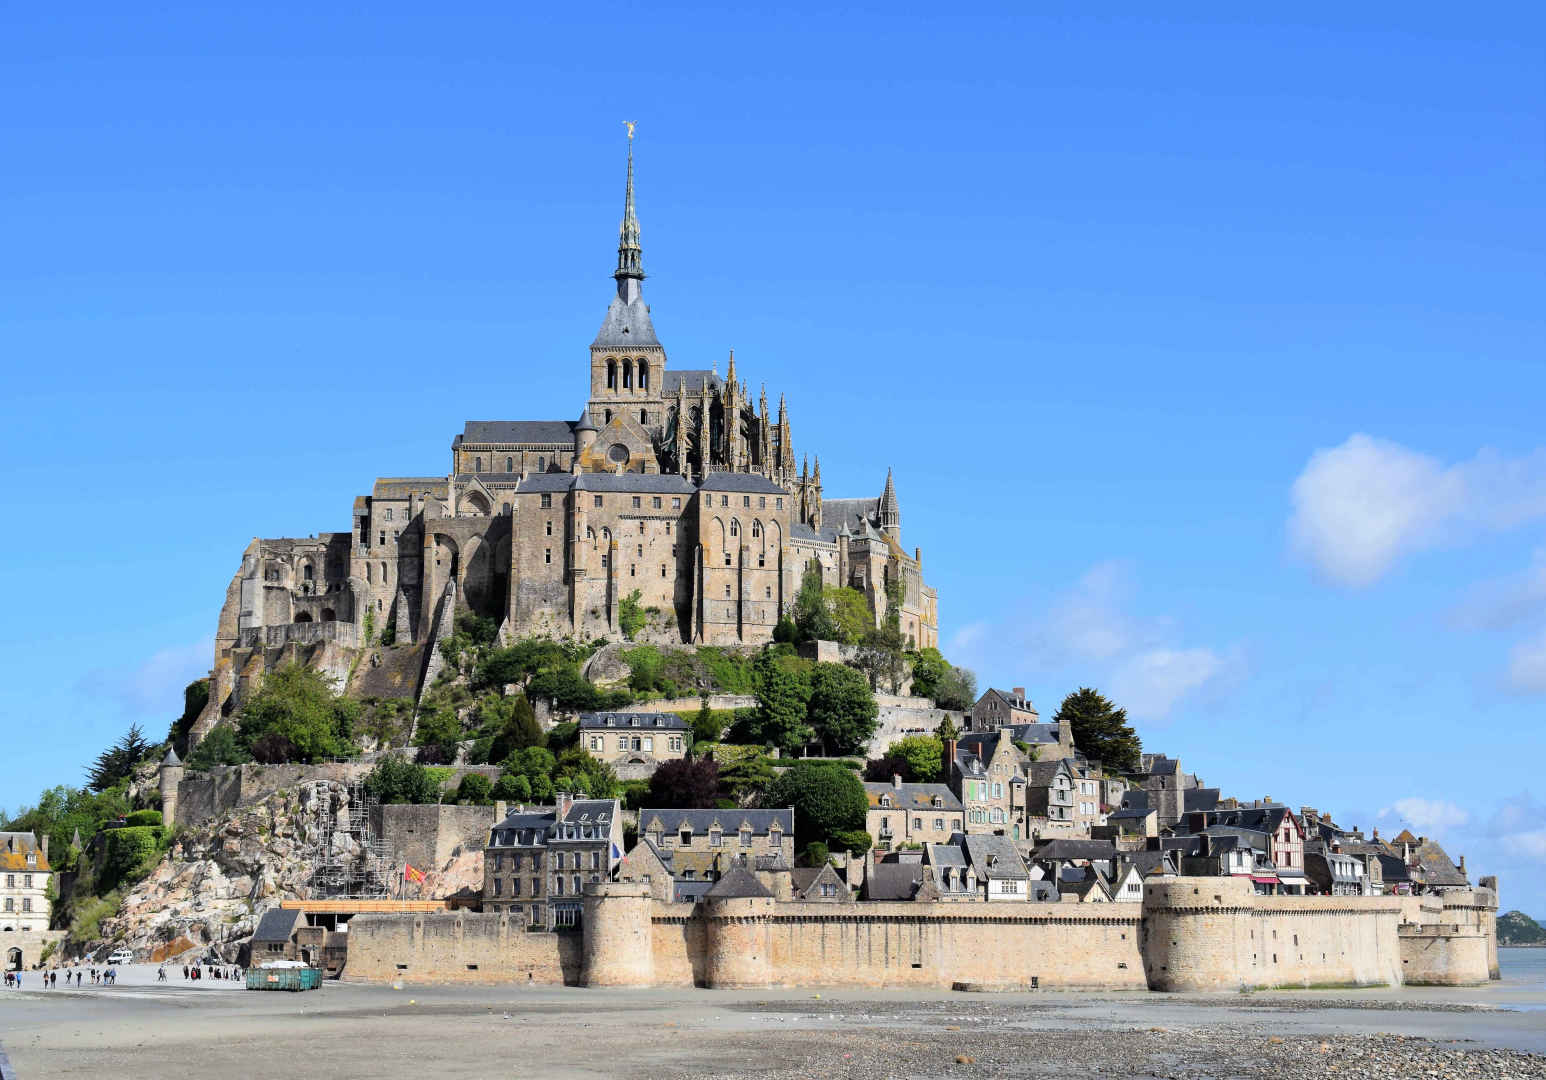 Lâu đài "bất khả xâm phạm" và những bí ẩn chưa được giải mã ở Pháp - 1